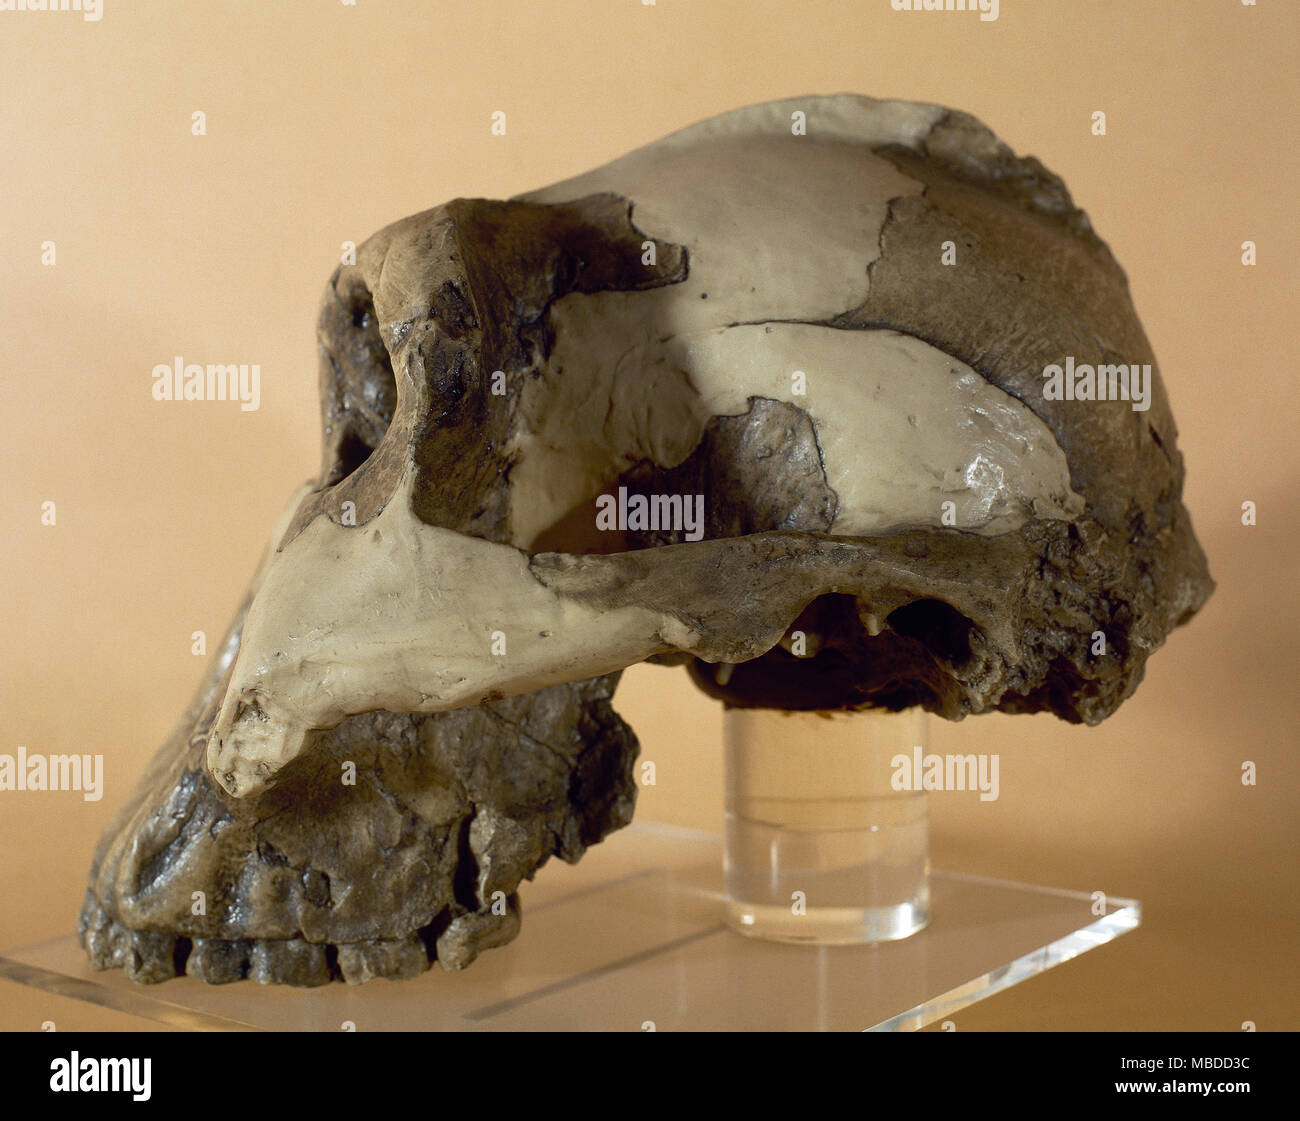 Reproduction d'un crâne de Zinjanthropus Boisei. Paléolithique. Site d'Olduvai, en Tanzanie. Musée Archéologique de Catalogne, Barcelone, Espagne. Banque D'Images